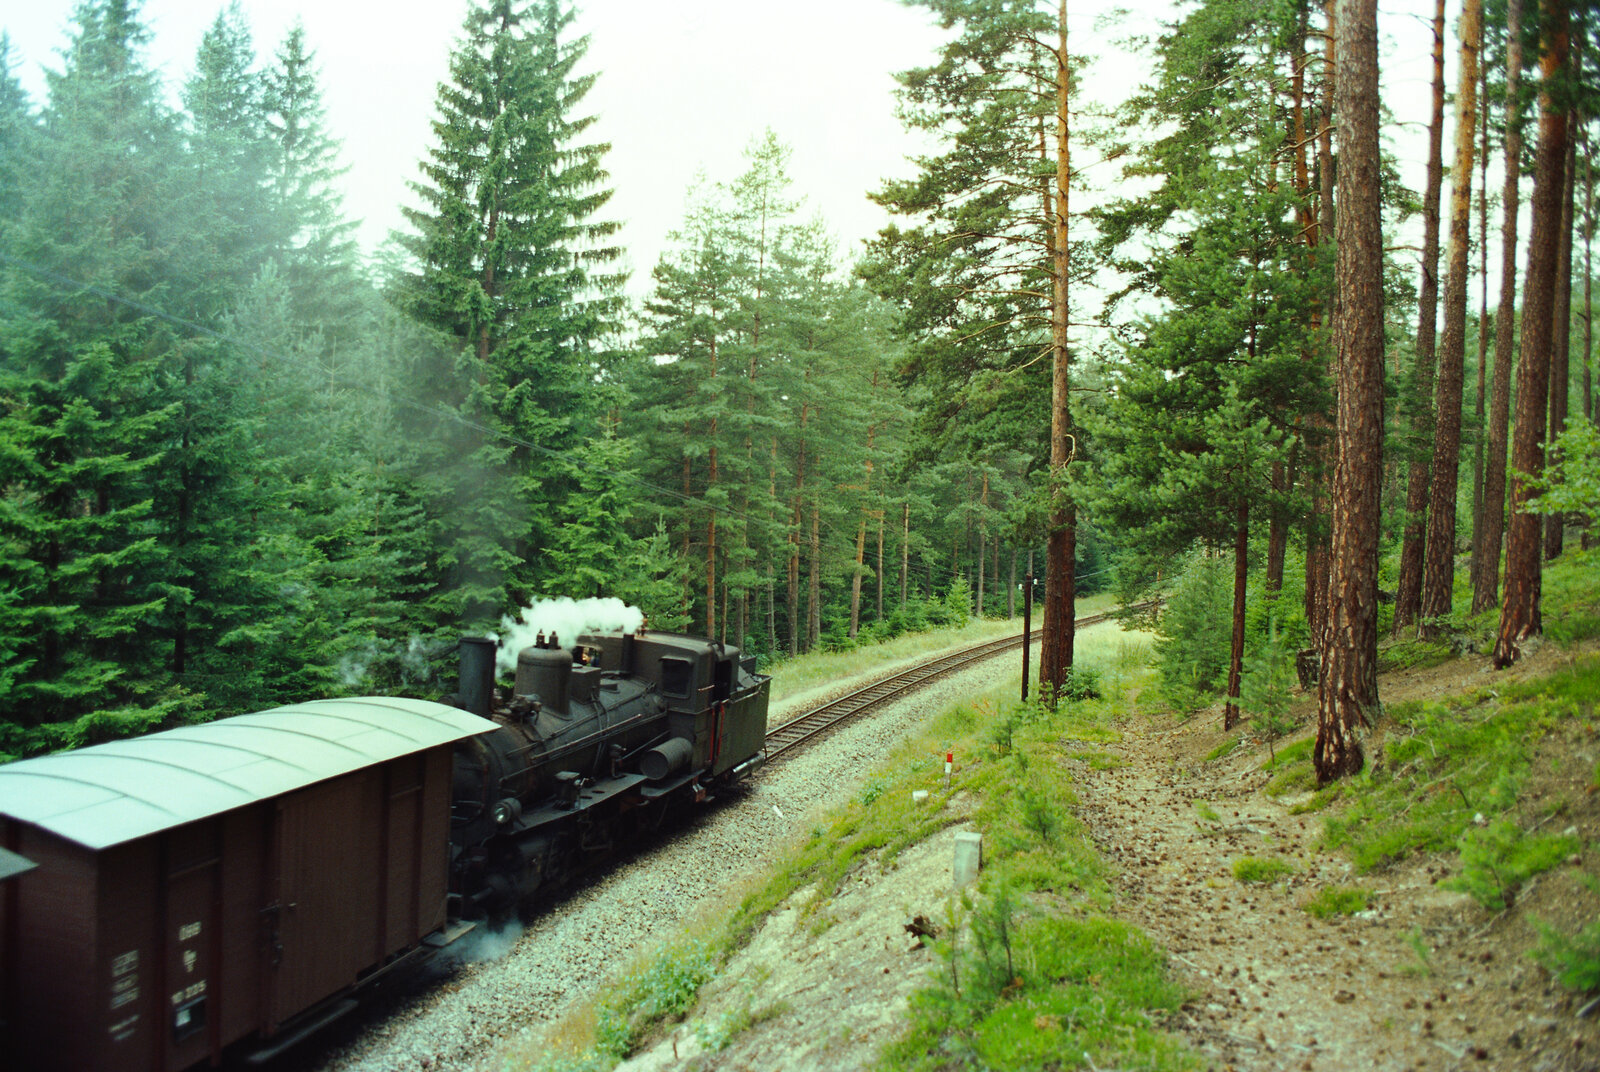 Regulärer Dampfzug der Waldviertelbahn, Ort leider unbekannt.
Datum: 20.08.1984